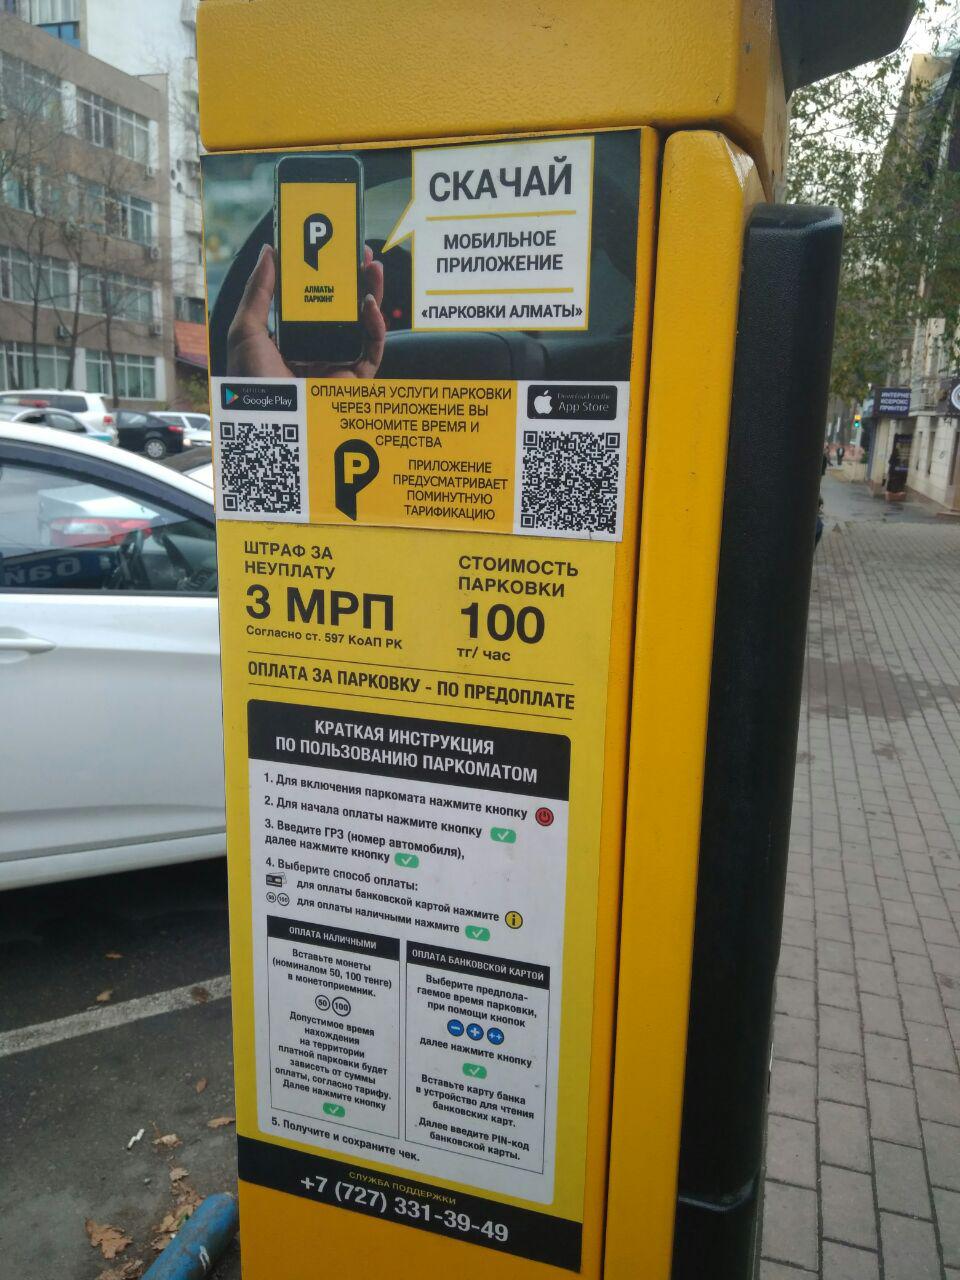 Оплата парковки через телефон. Оплата парковки. Стоимость услуг парковки. Аэропорт Алматы Паркова. Оплата парковки в Ереване.